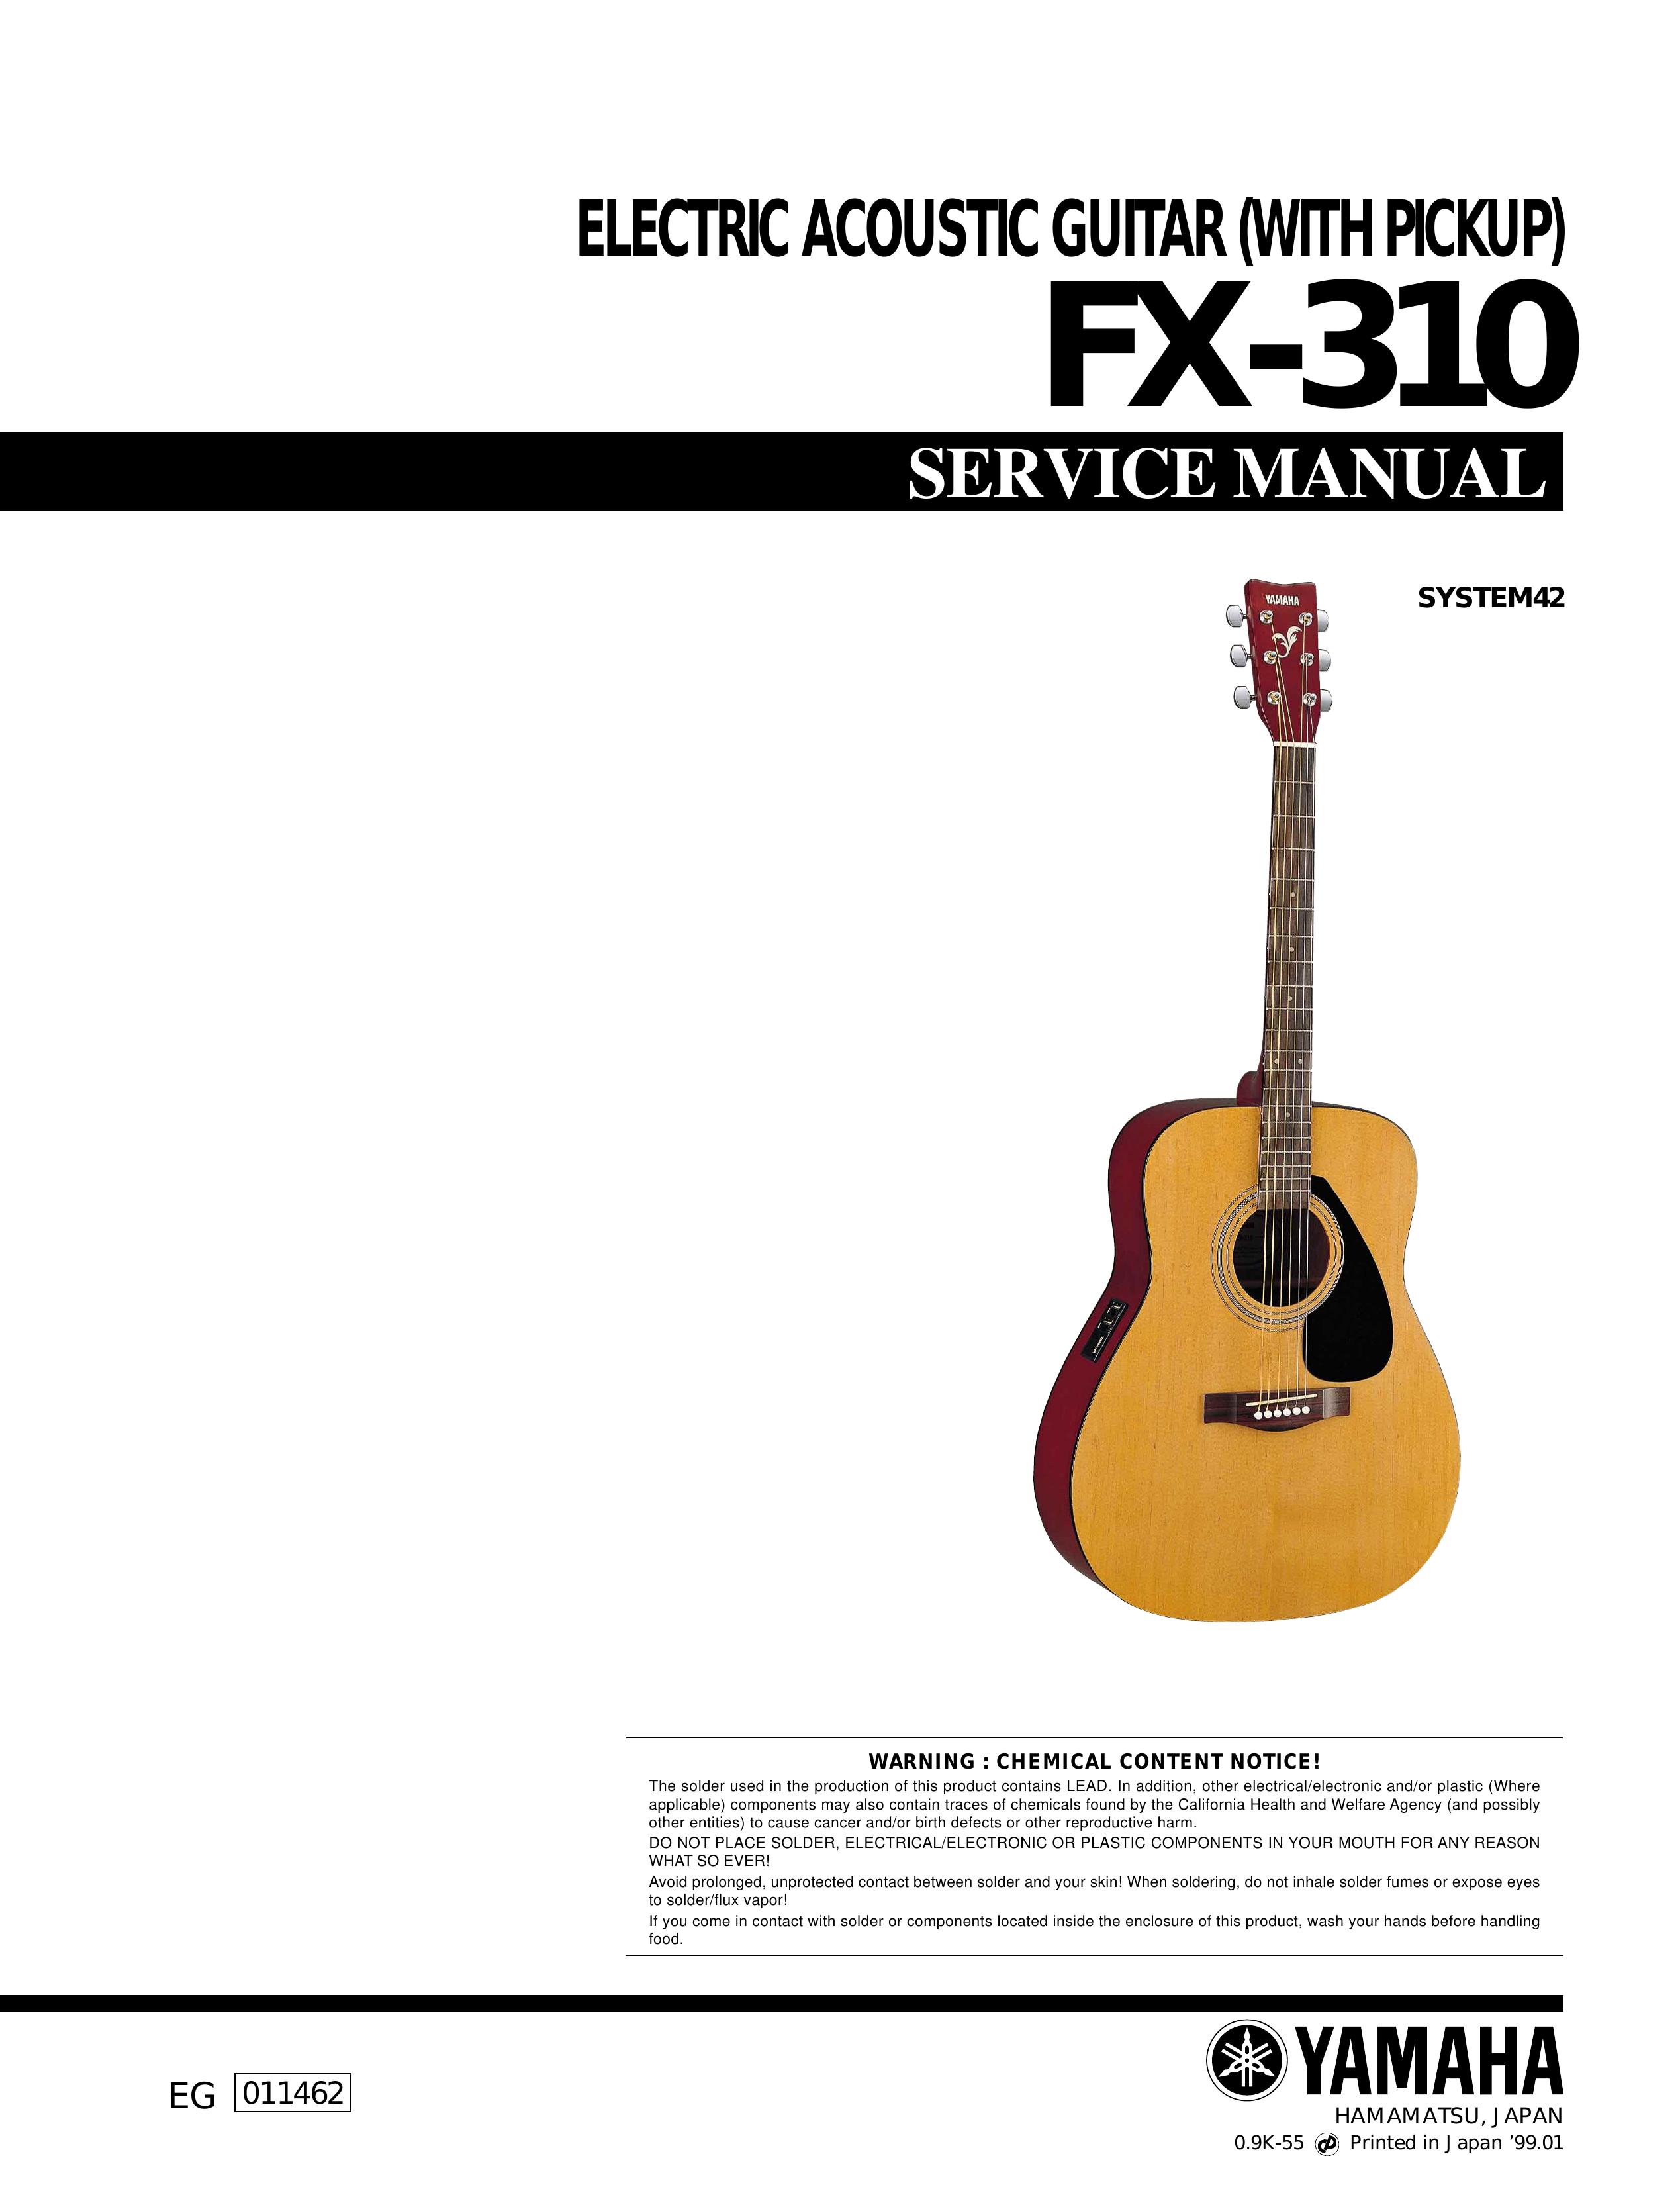 Yamaha FX-310 Guitar User Manual